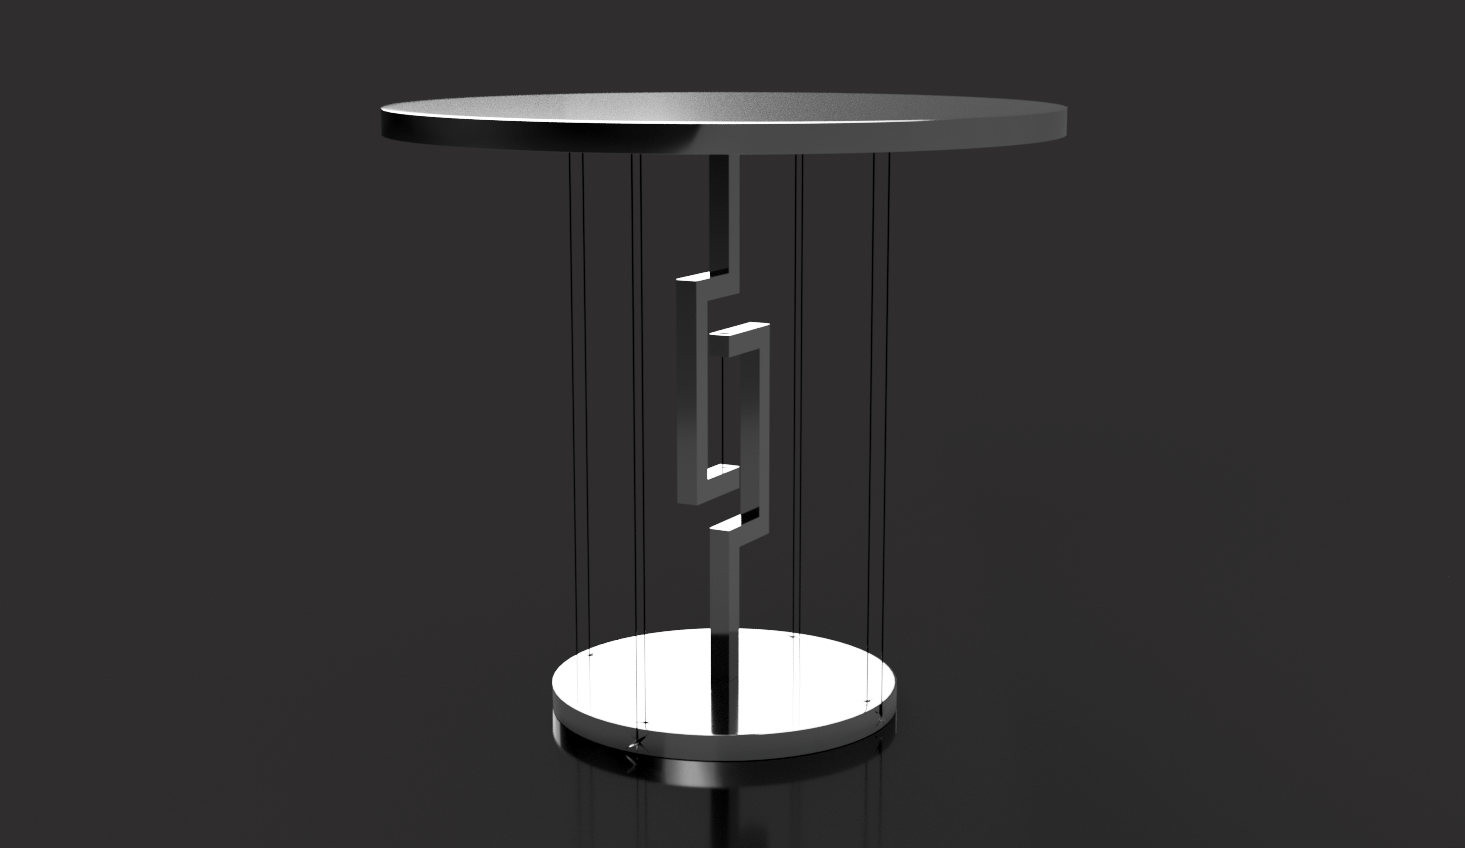 Floating TableTOp_03.png Télécharger fichier STL gratuit Table flottante • Design imprimable en 3D, Seabird